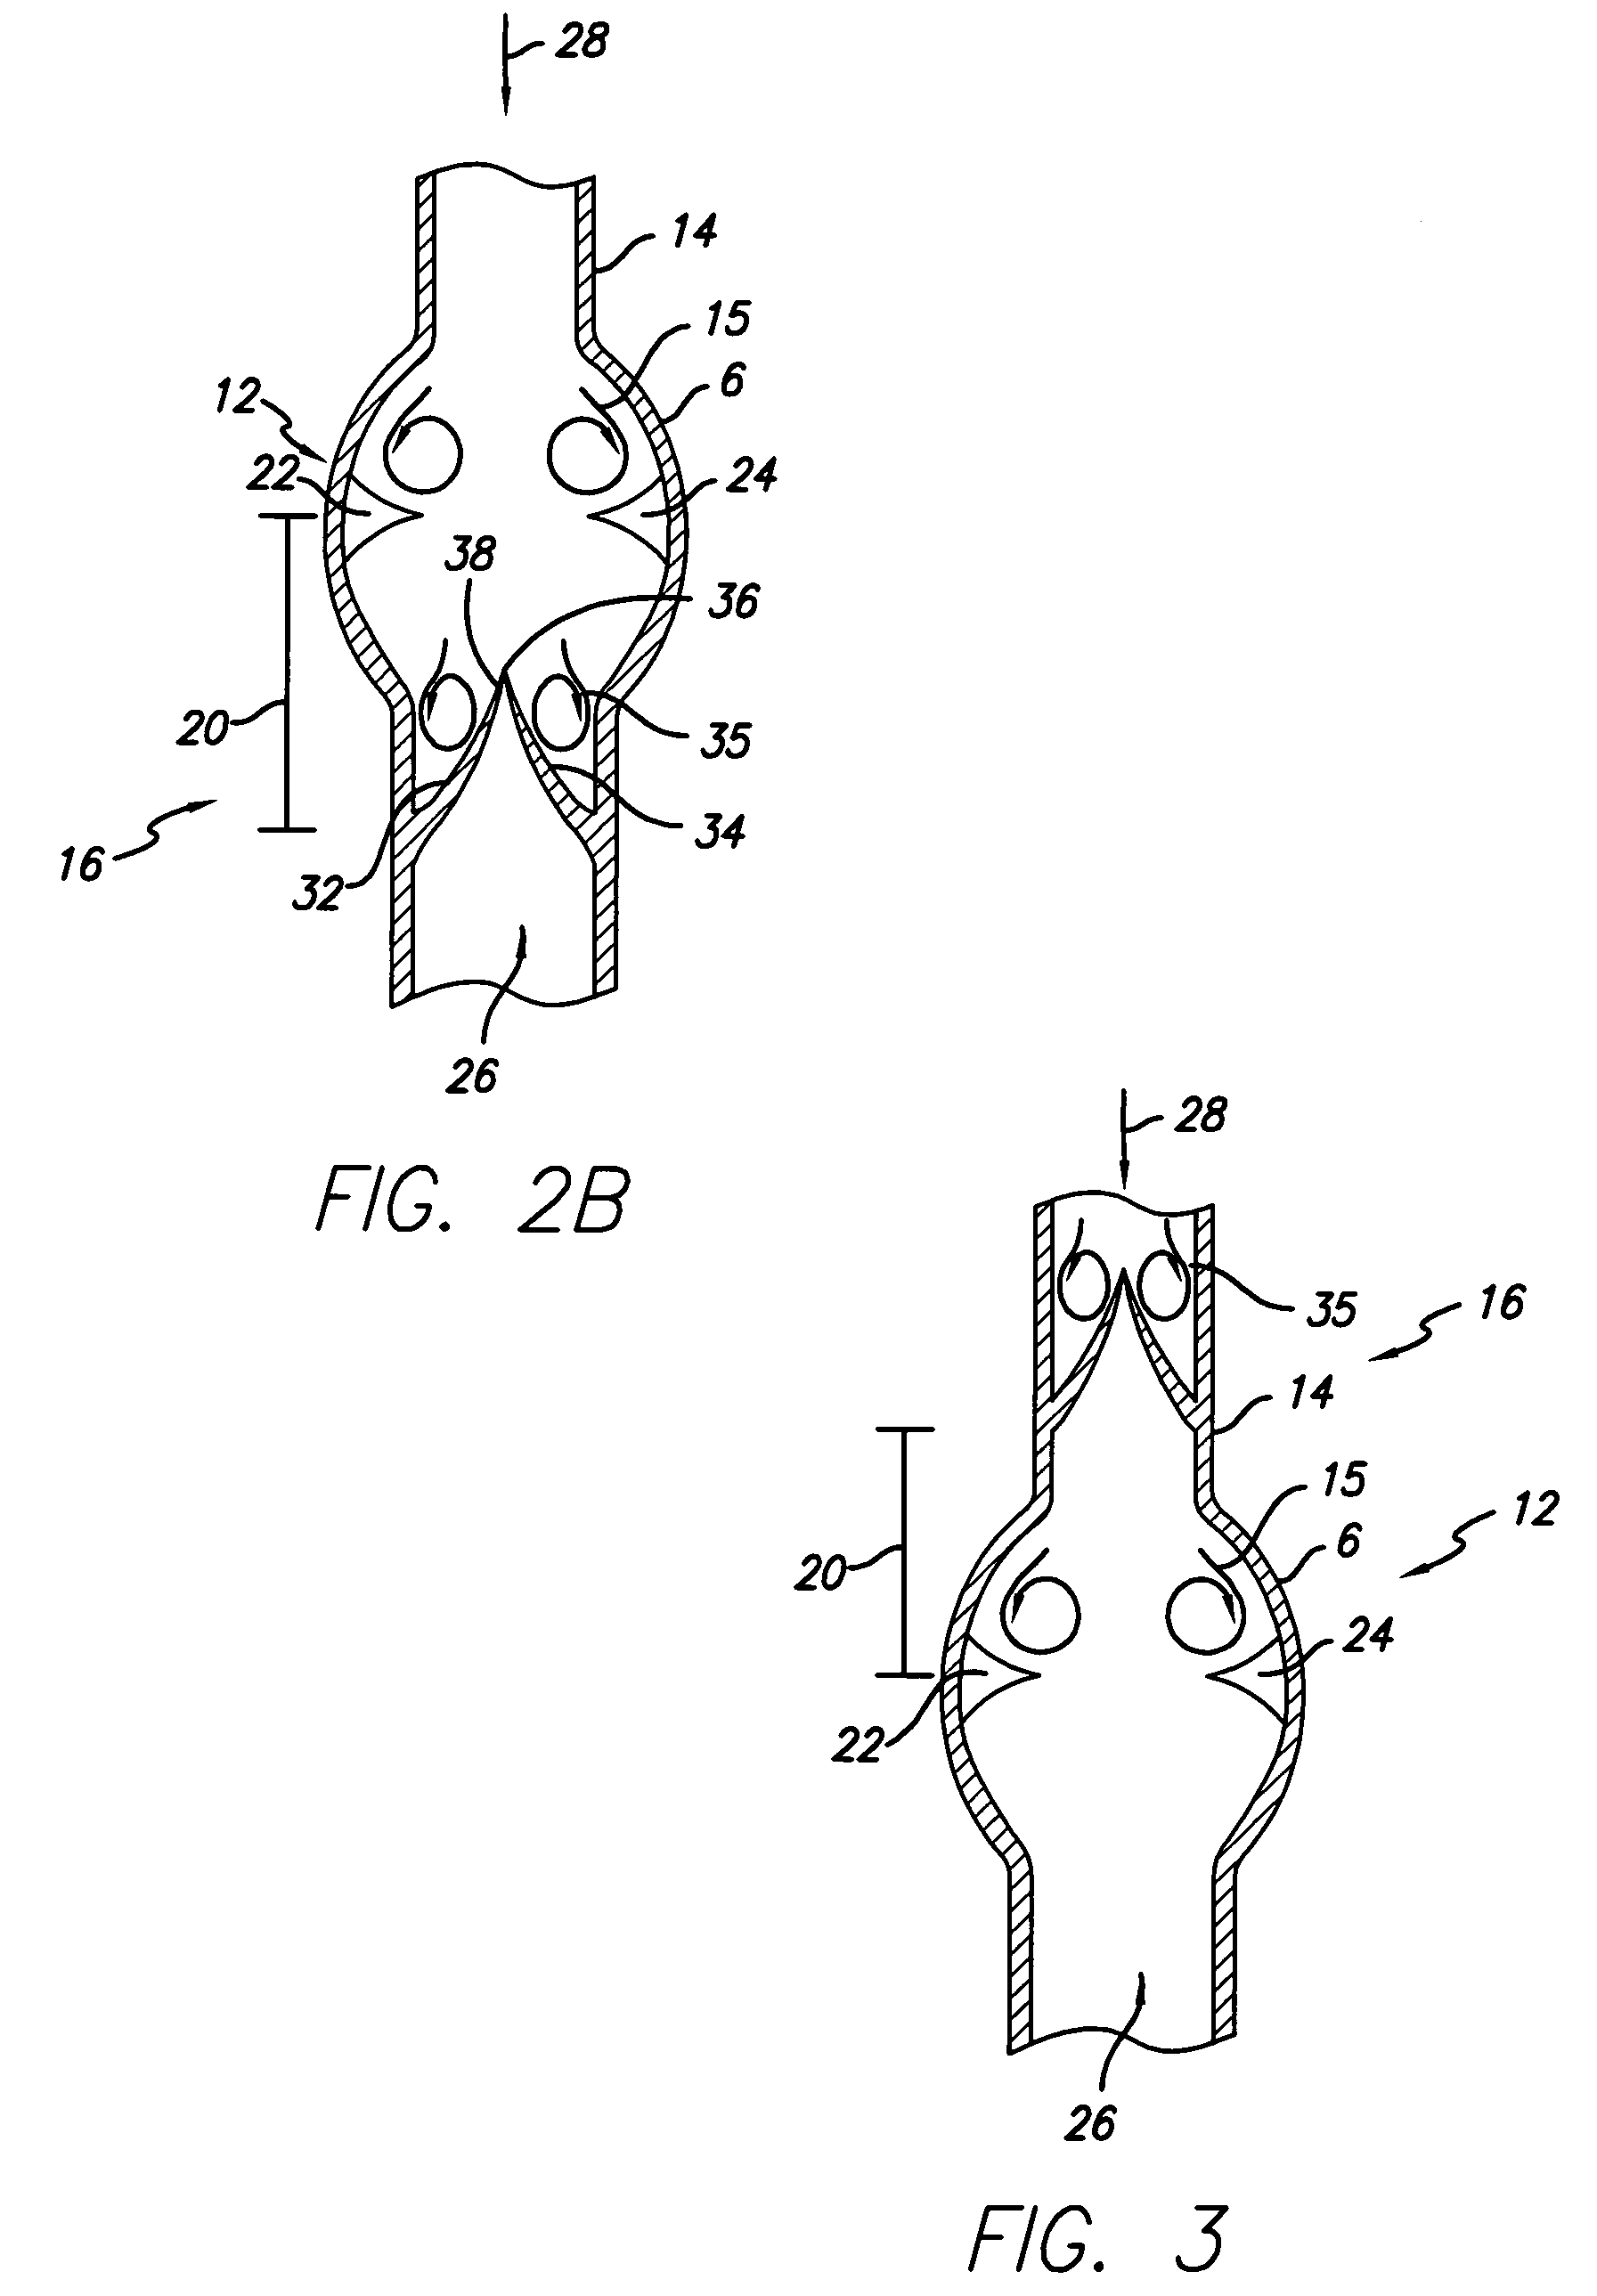 Method for implanting prosthetic valves